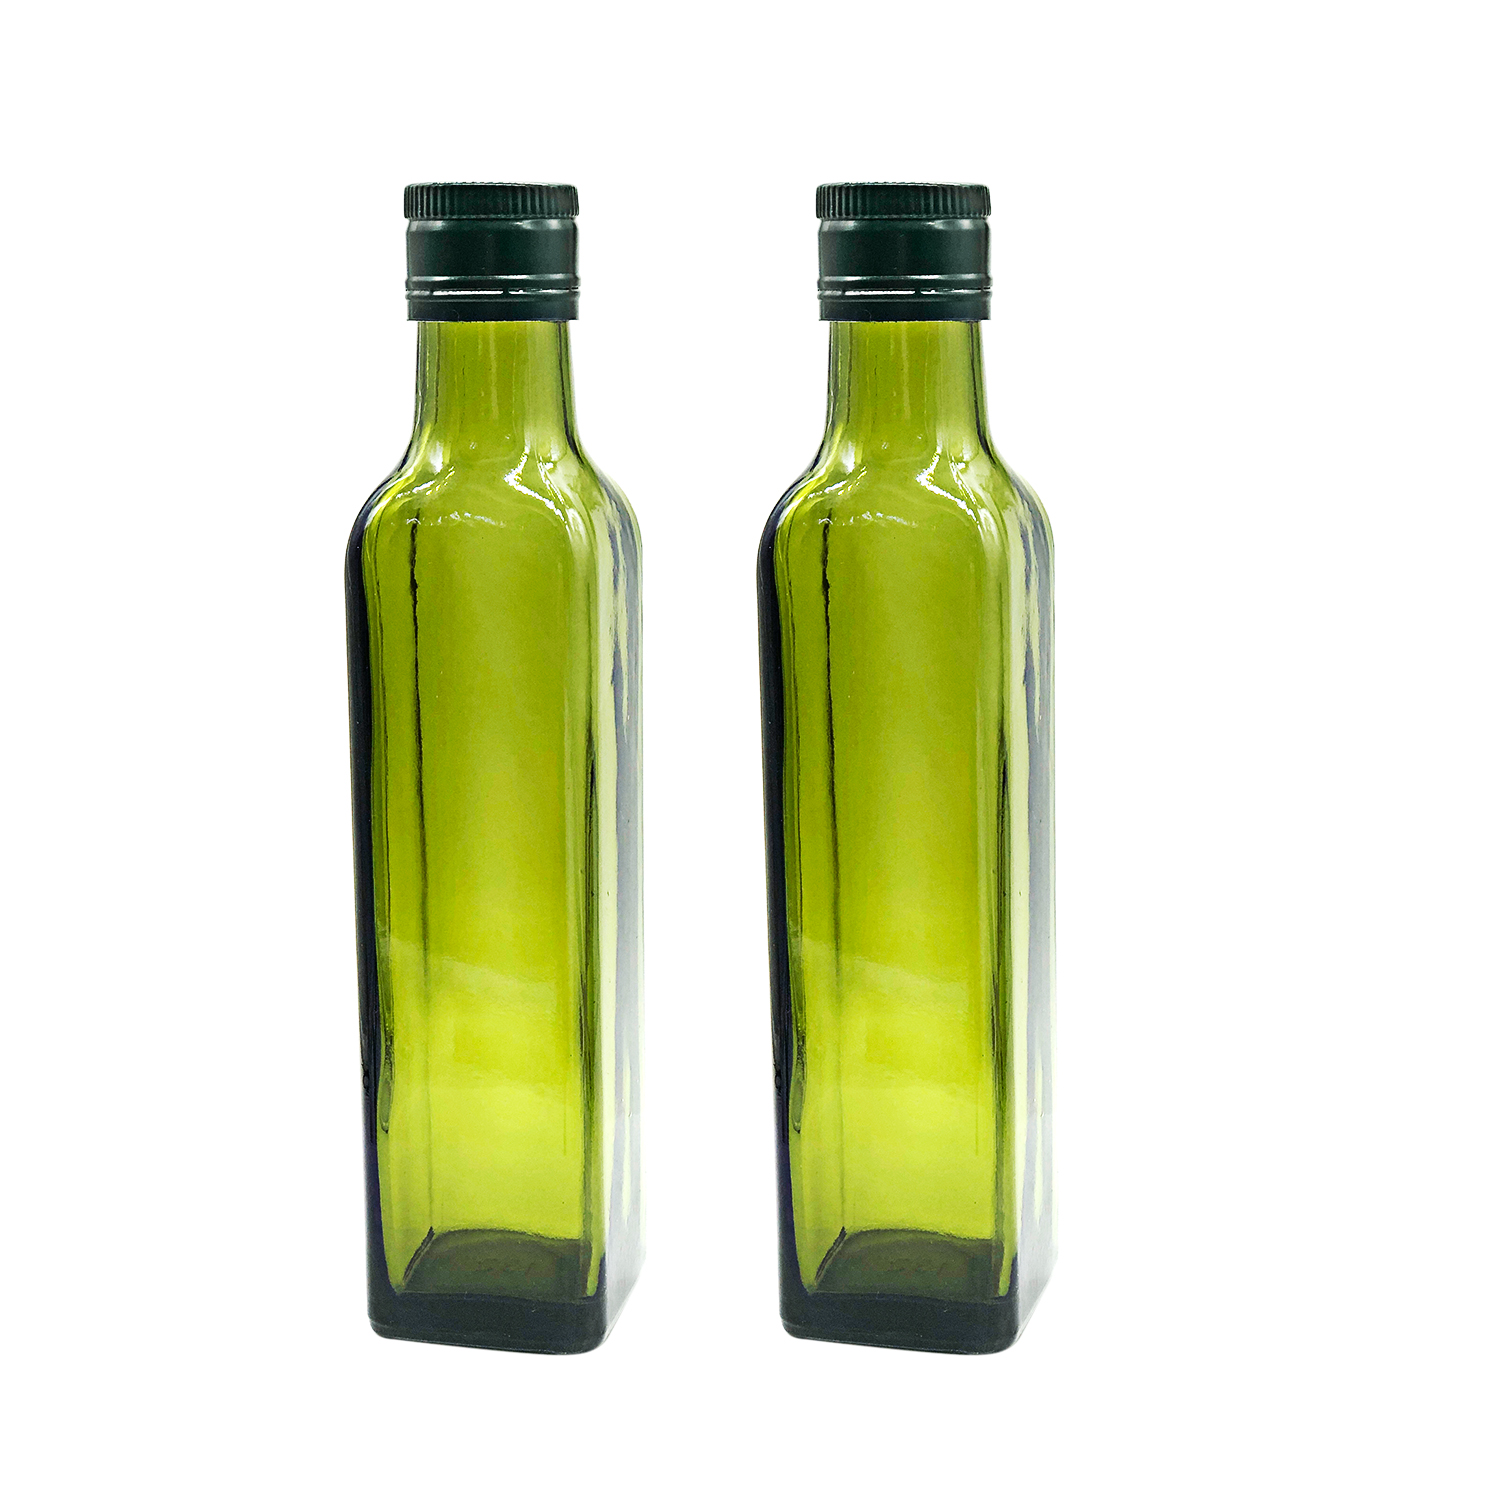 Olive oil glass bottles